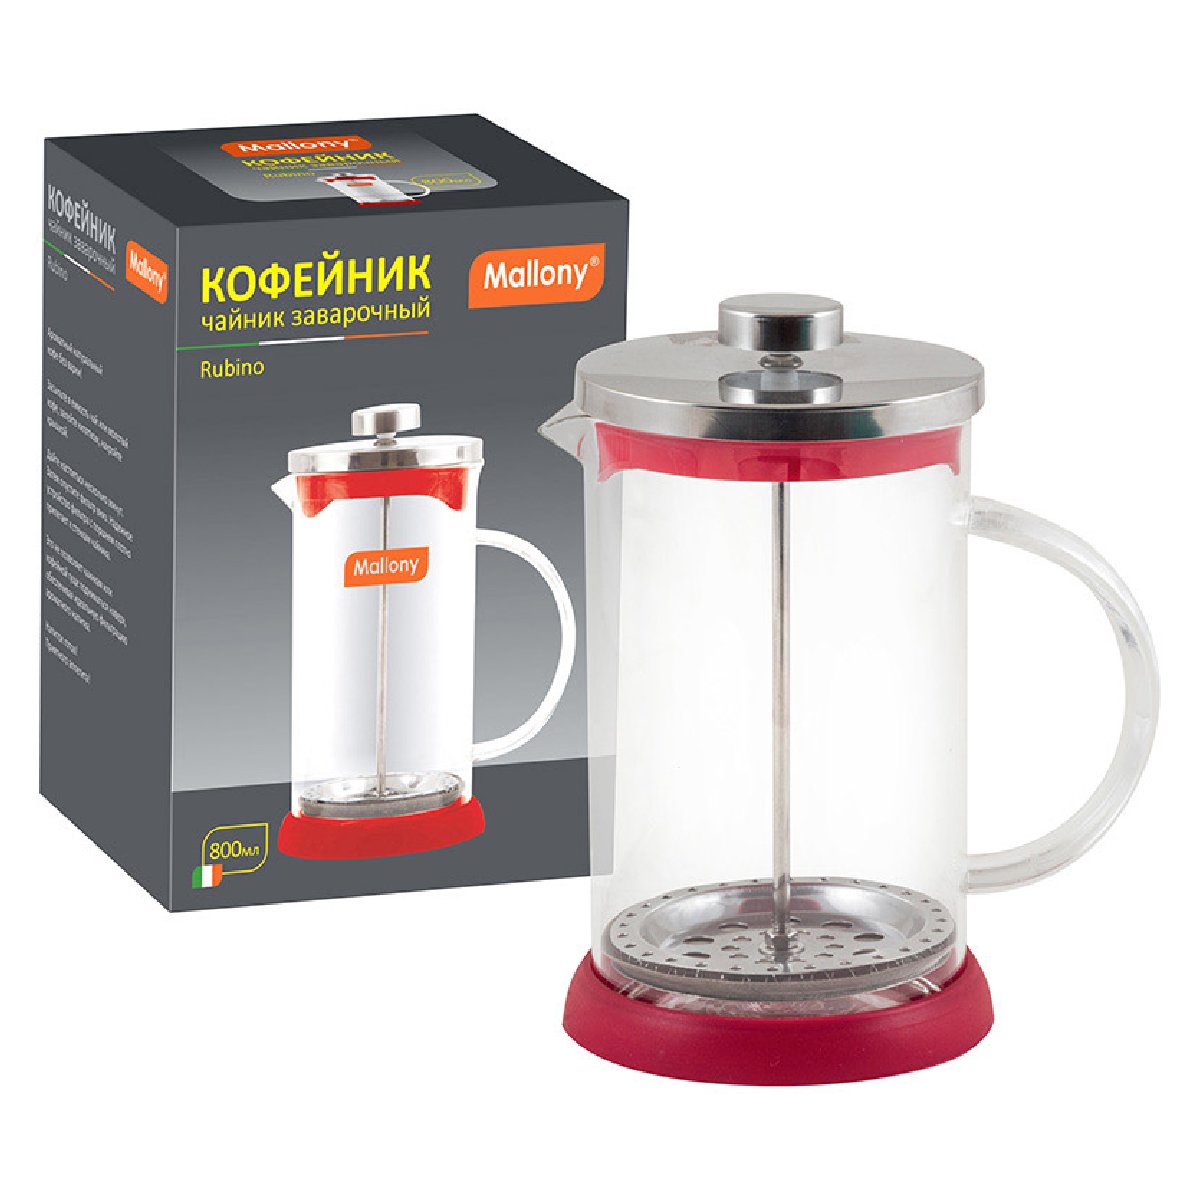 Чайник кофейник (кофе-пресс) RUBINO 800 мл из боросиликатного стекла, цвет-красный (950072)Купить